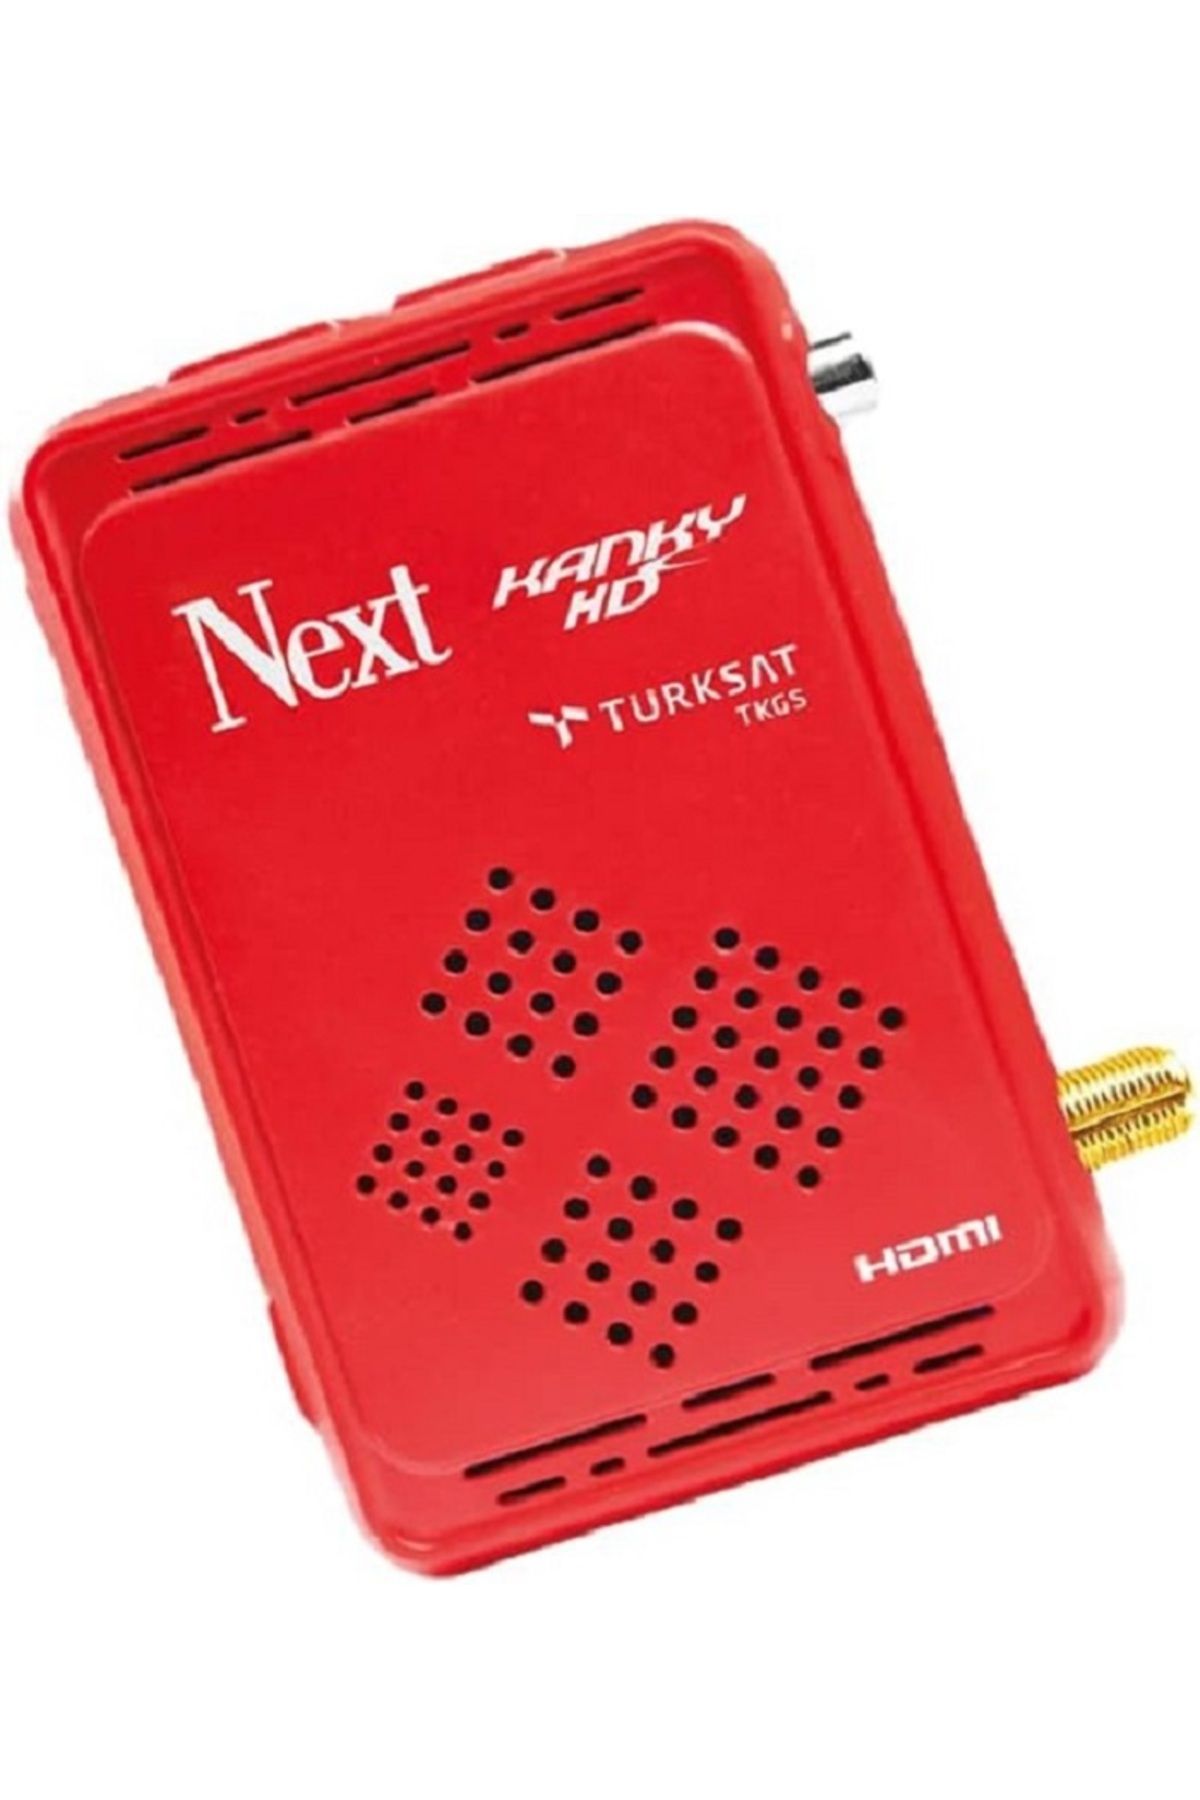 Next Nextstar Next Kanky HD Uydu Alıcı